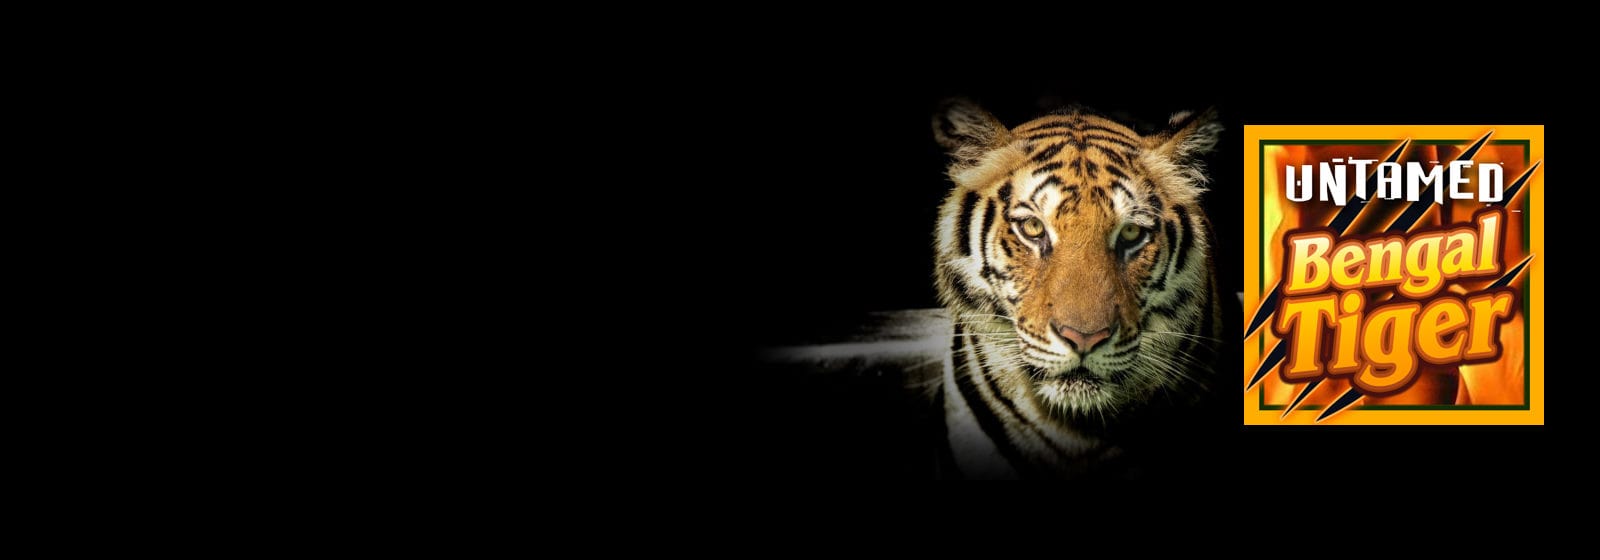 untamed bengal tiger